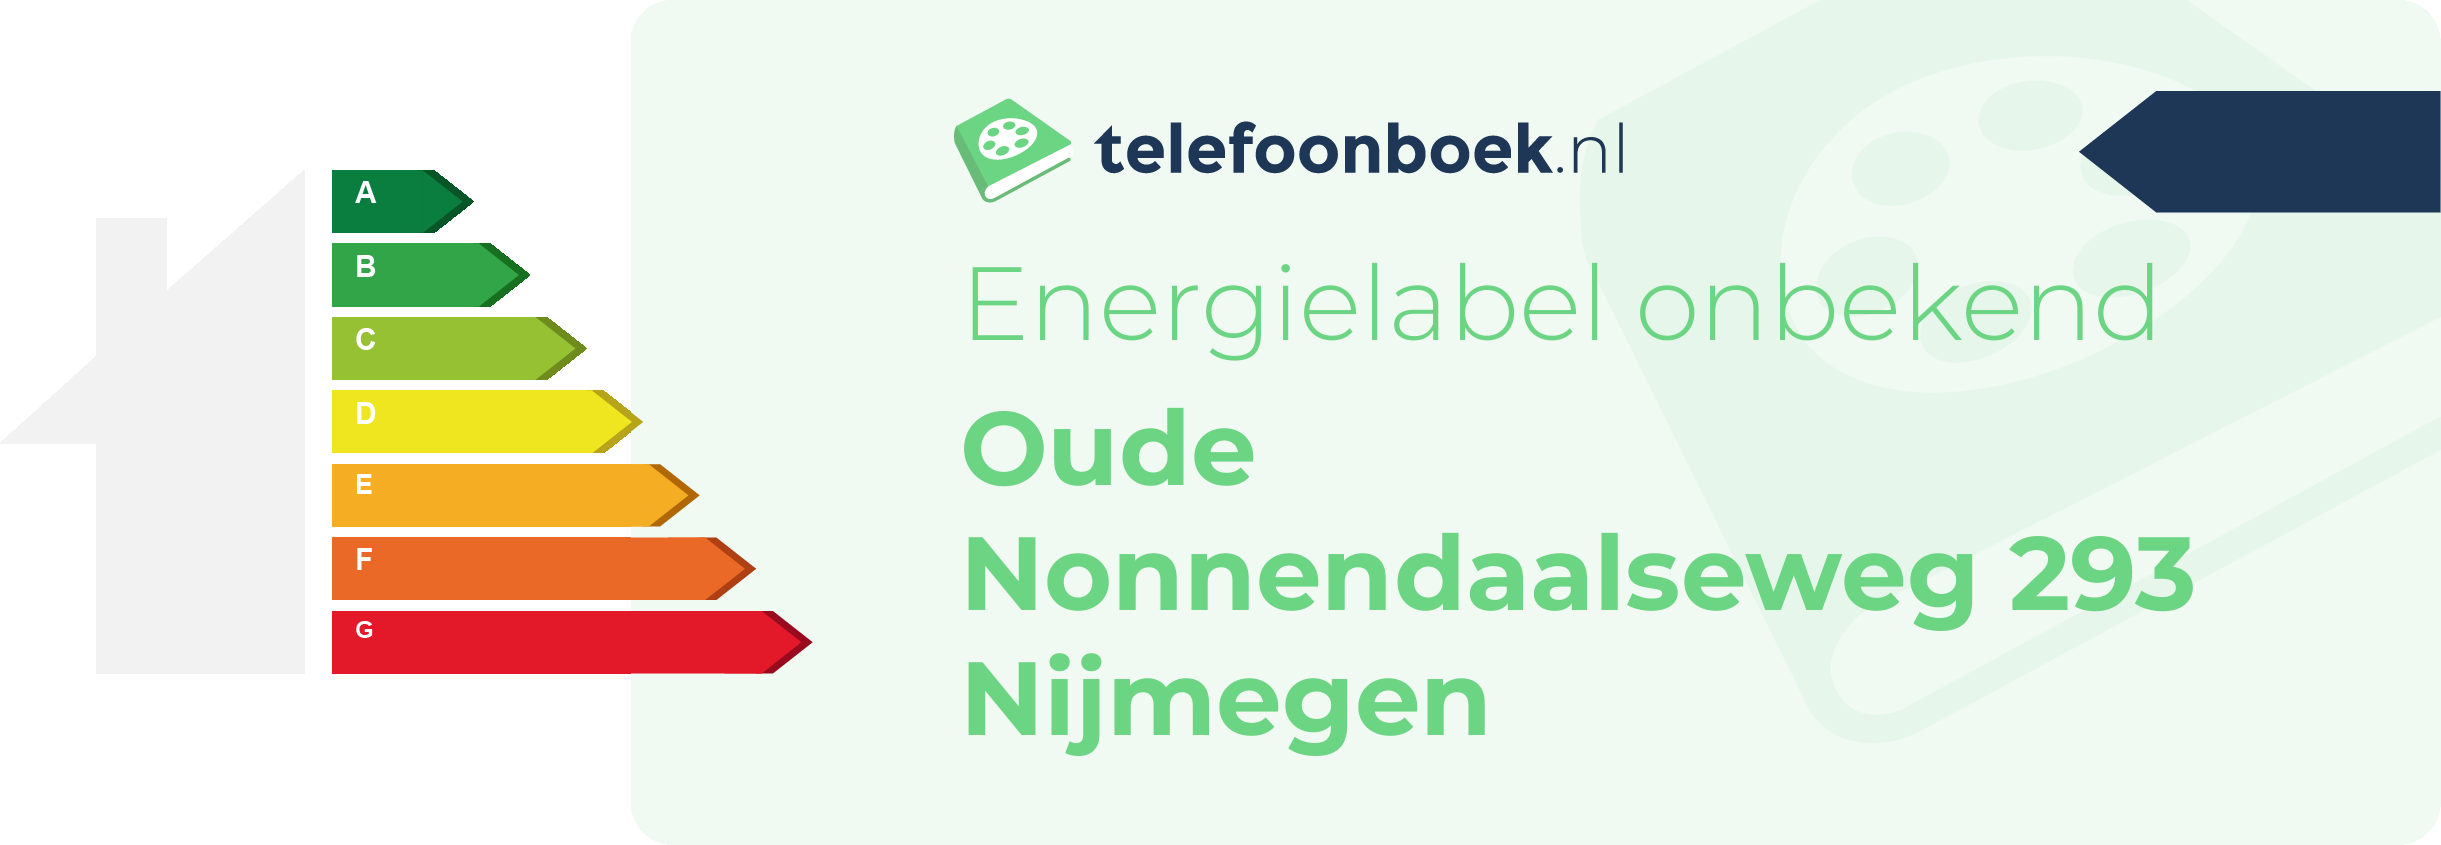 Energielabel Oude Nonnendaalseweg 293 Nijmegen